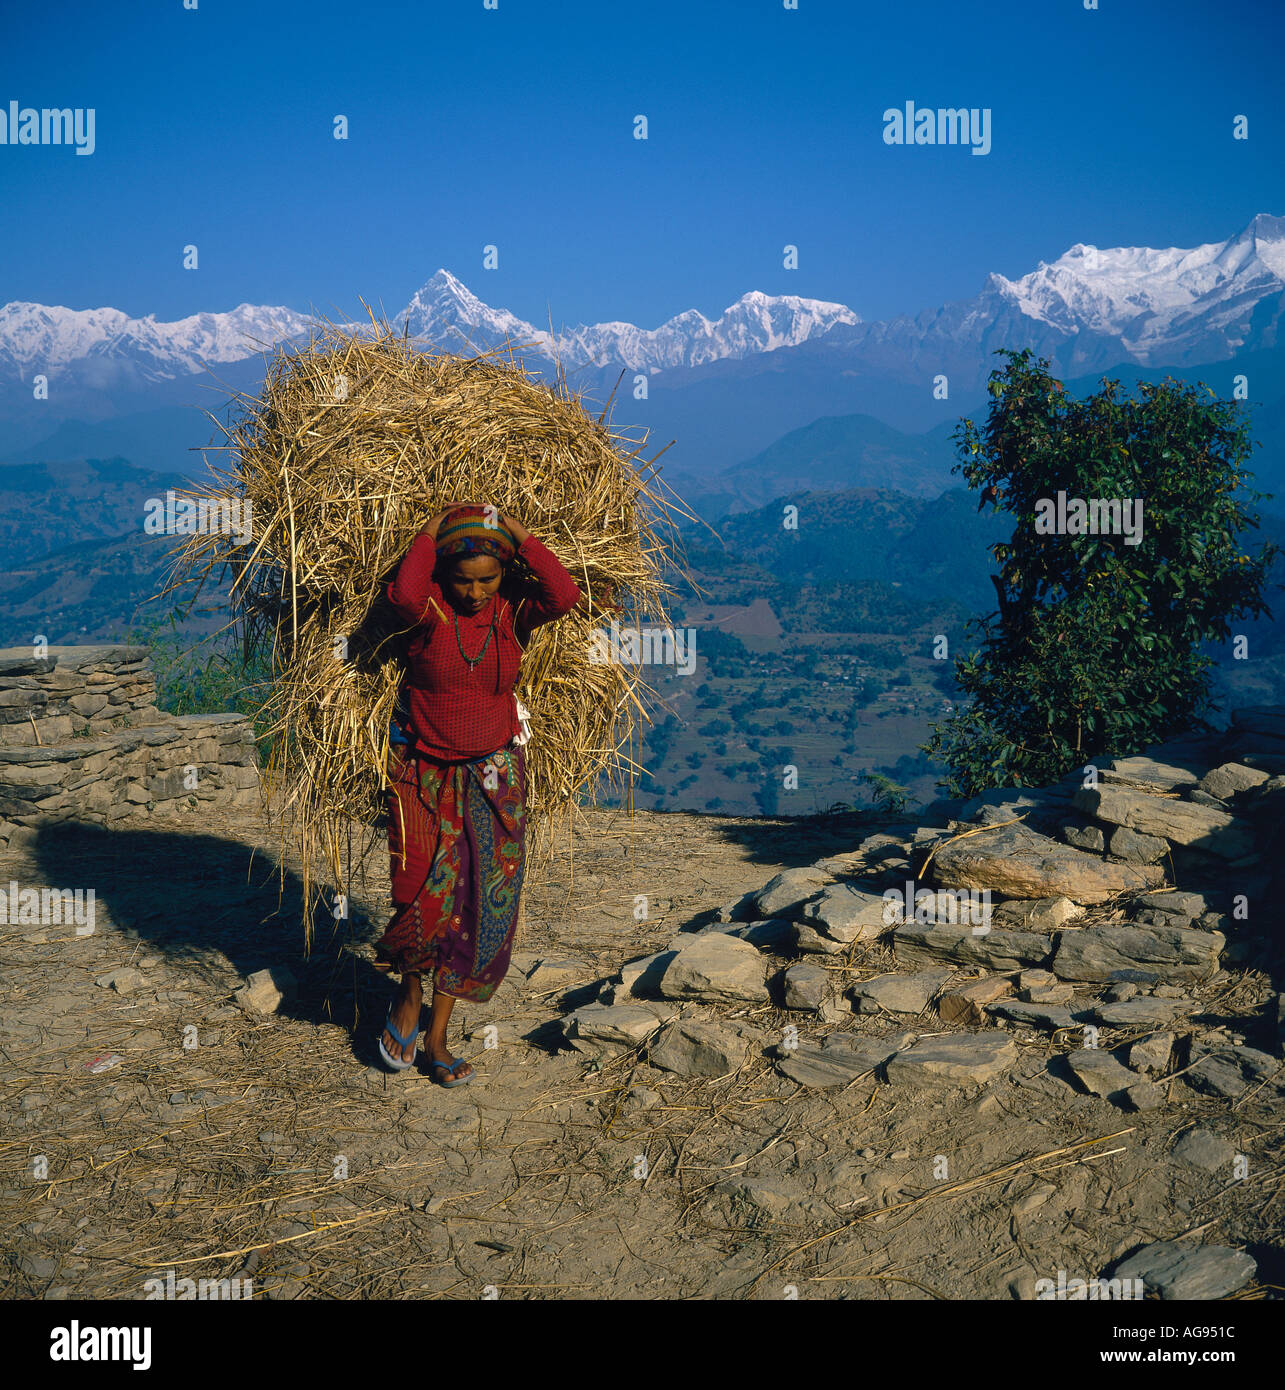 Région de l'Annapurna Népal Asie Népal Banque D'Images